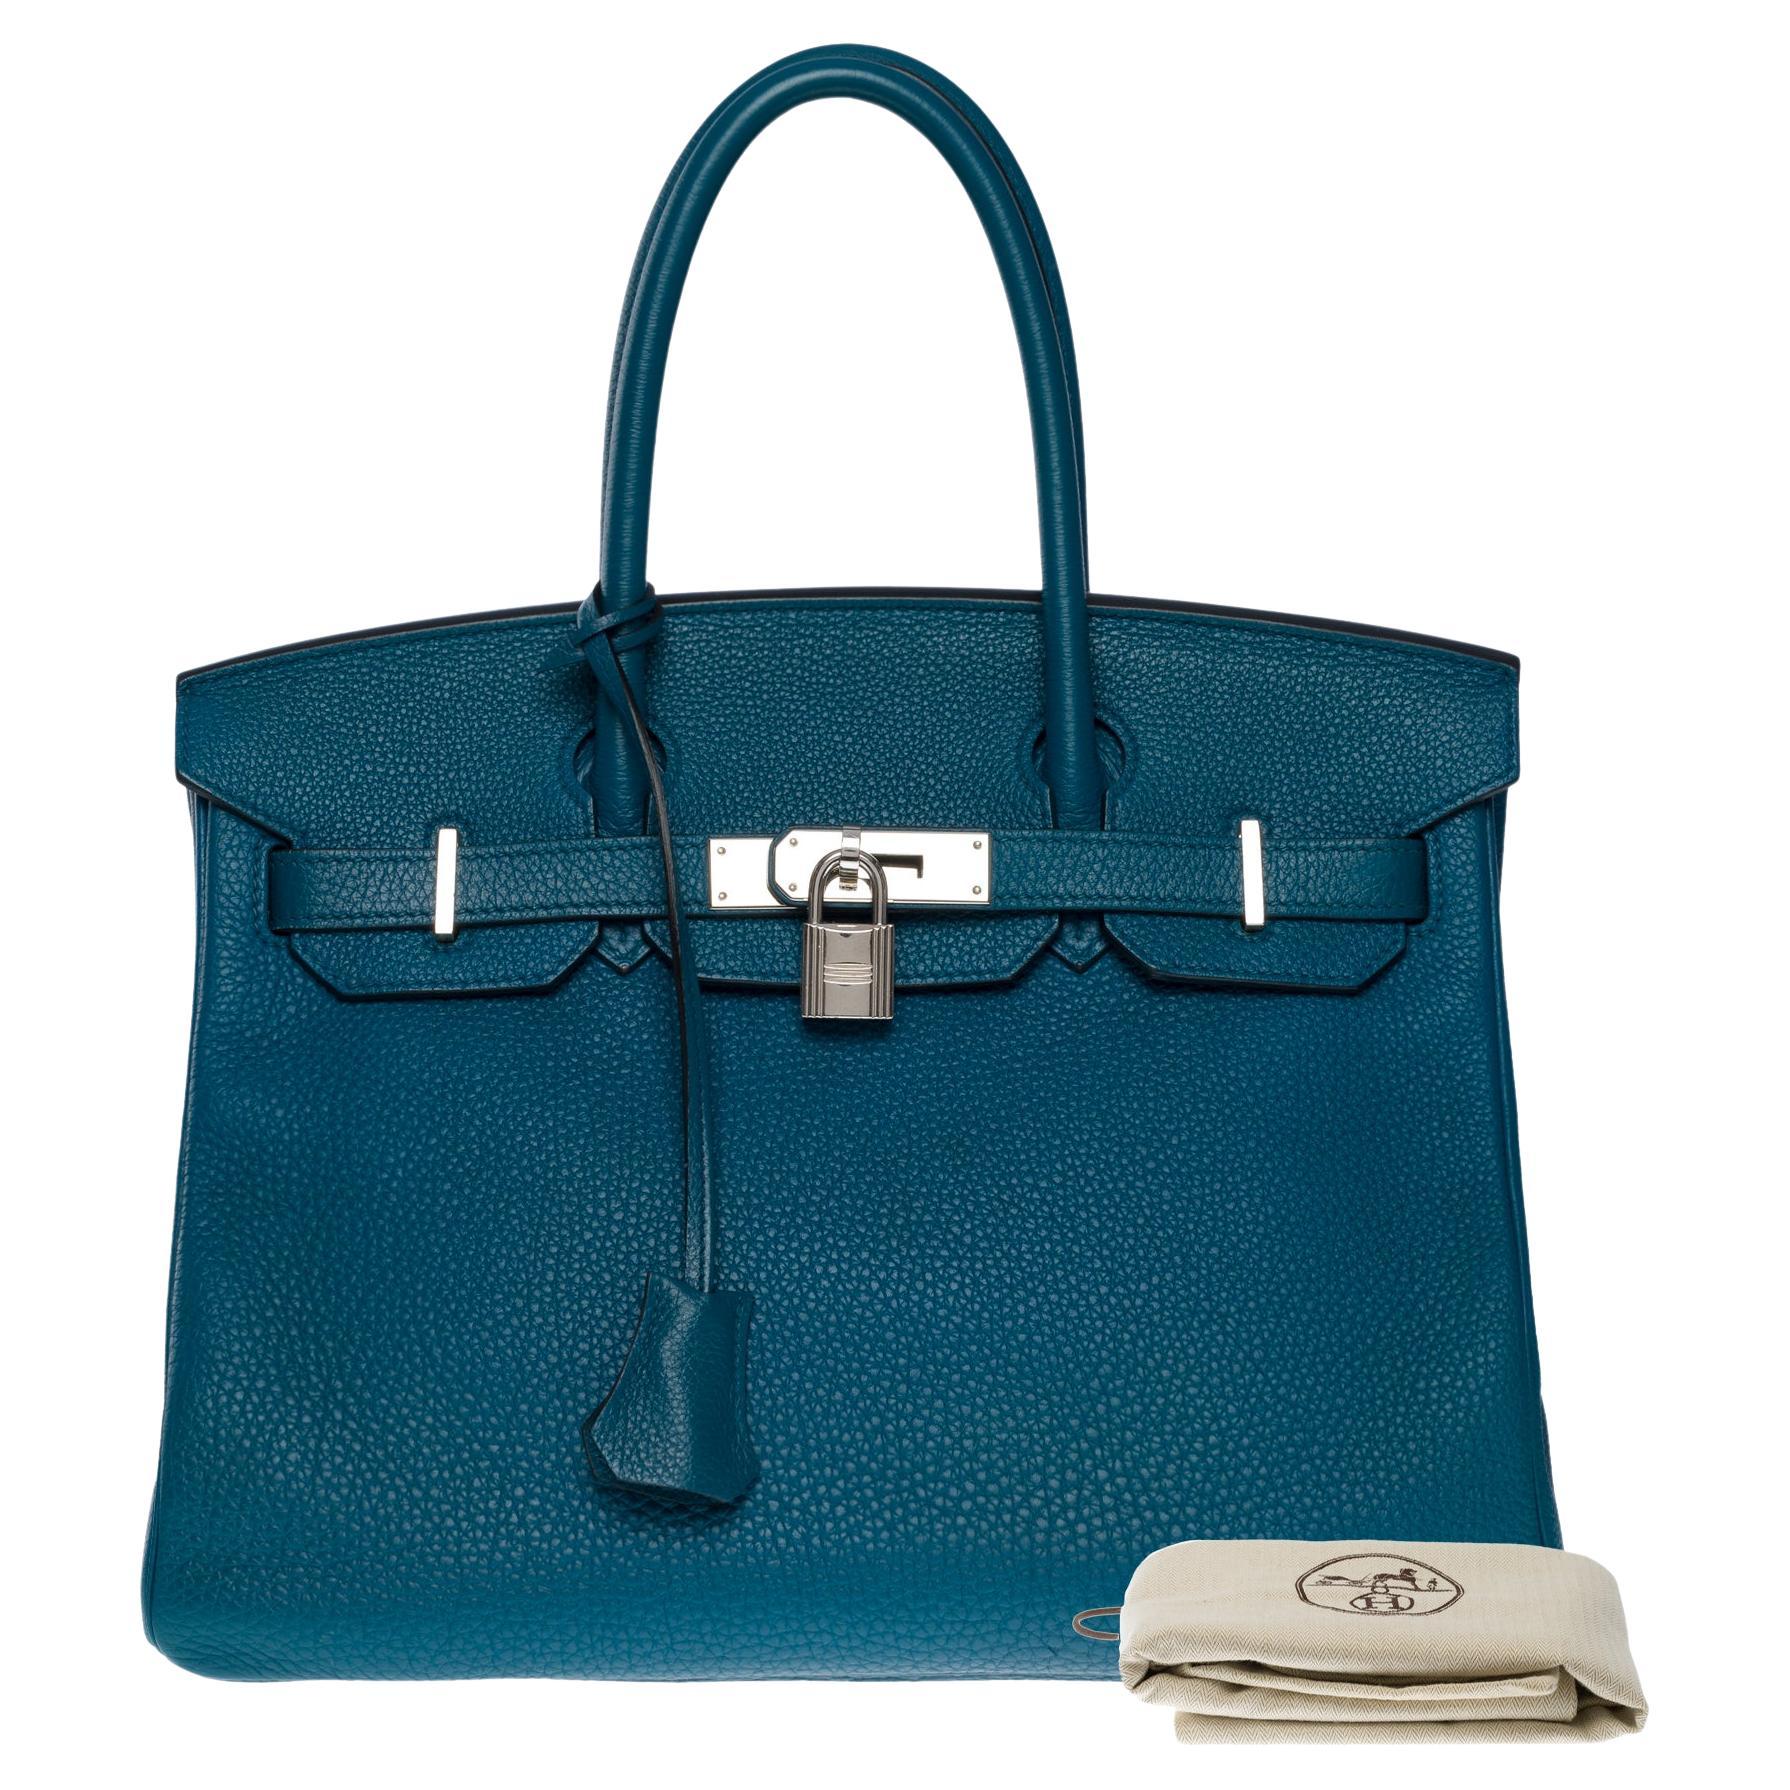 Amazing Hermès Birkin 30 handbag in Blue Colvert Togo leather, SHW